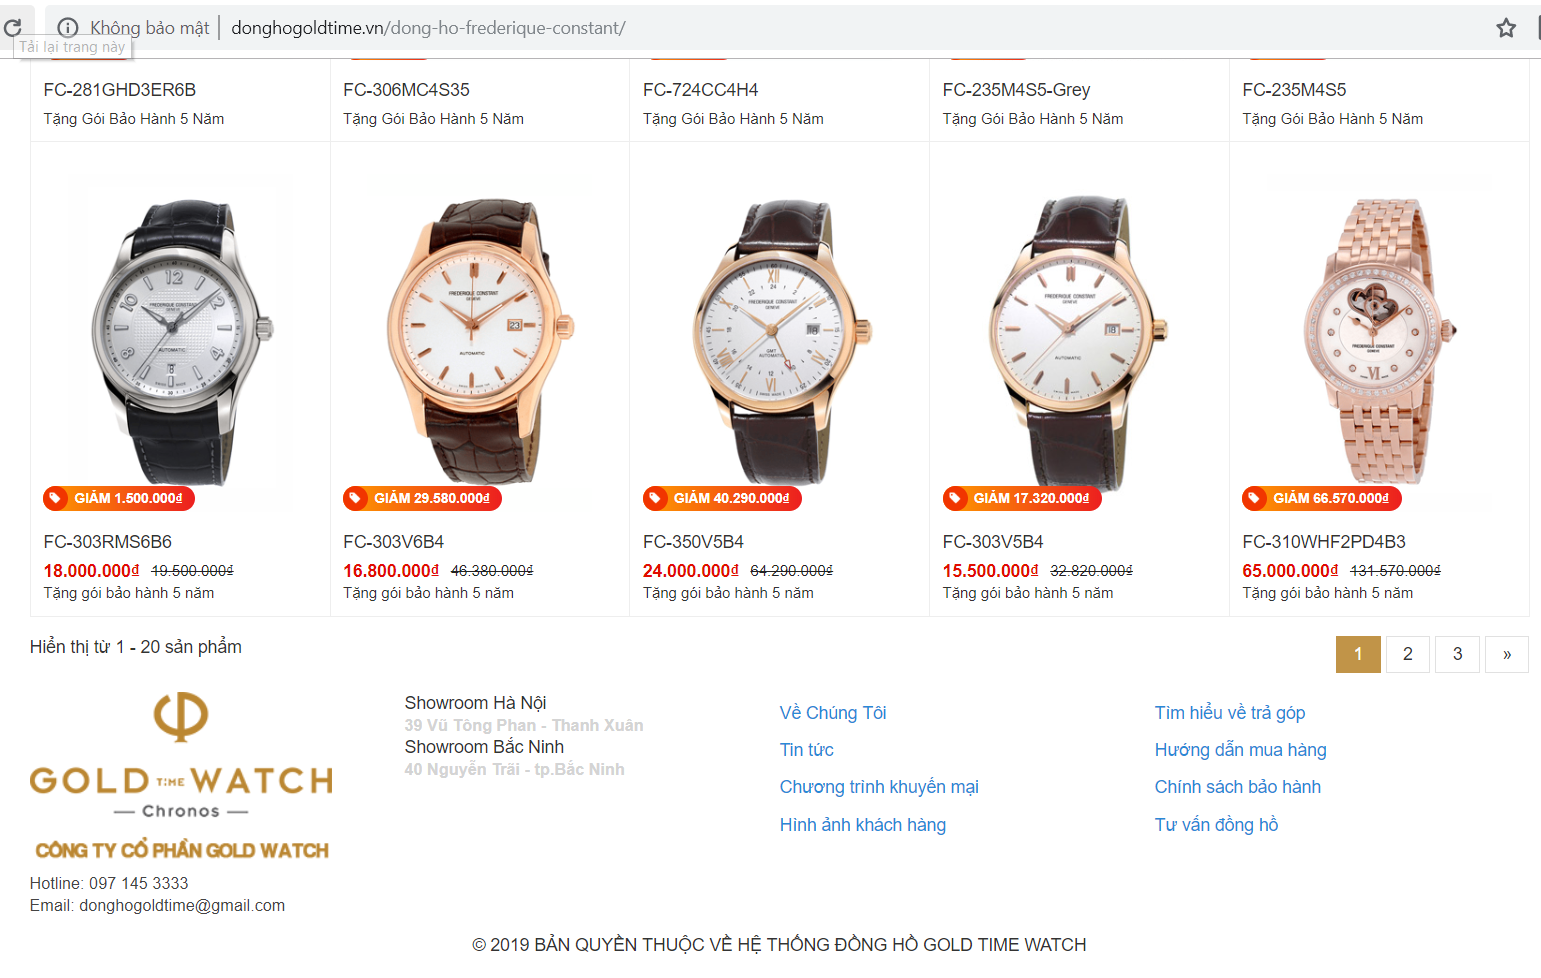 Hà Nội: Nhân viên Gold Time Watch bán đồng hồ xách tay không thuế